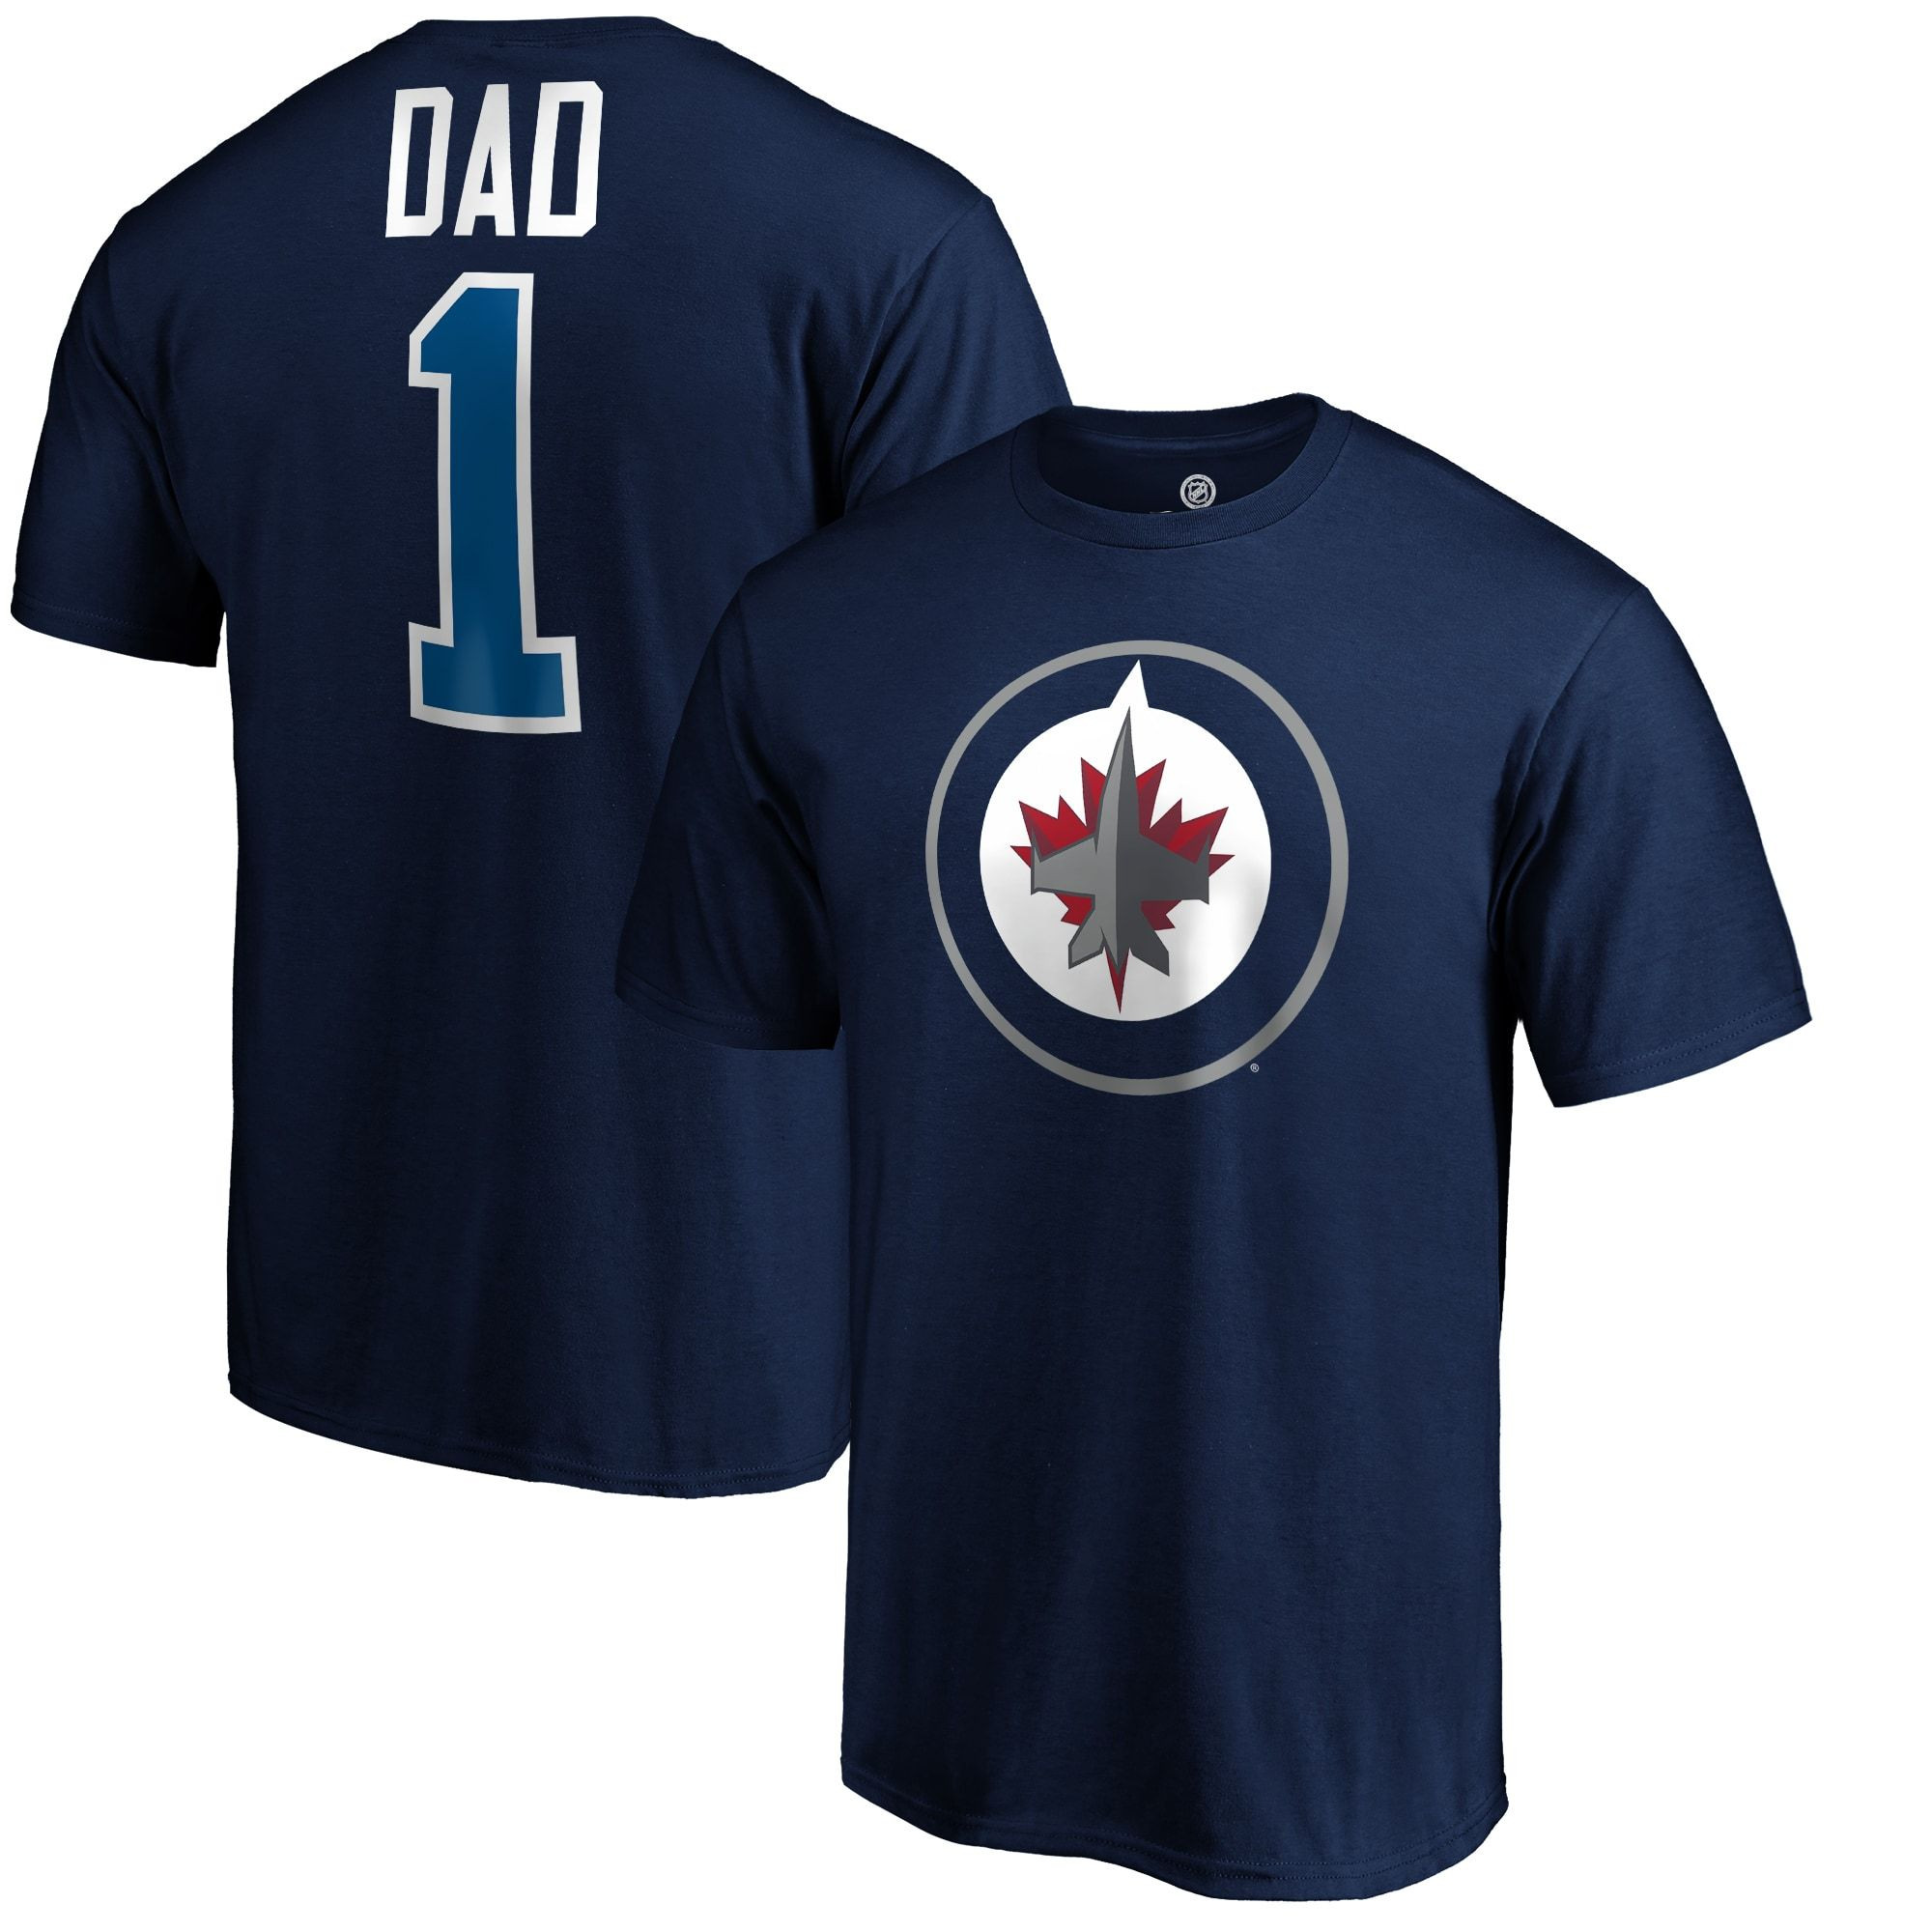 Men's Fanatics Branded Navy Winnipeg Jets #1 Dad T-Shirt